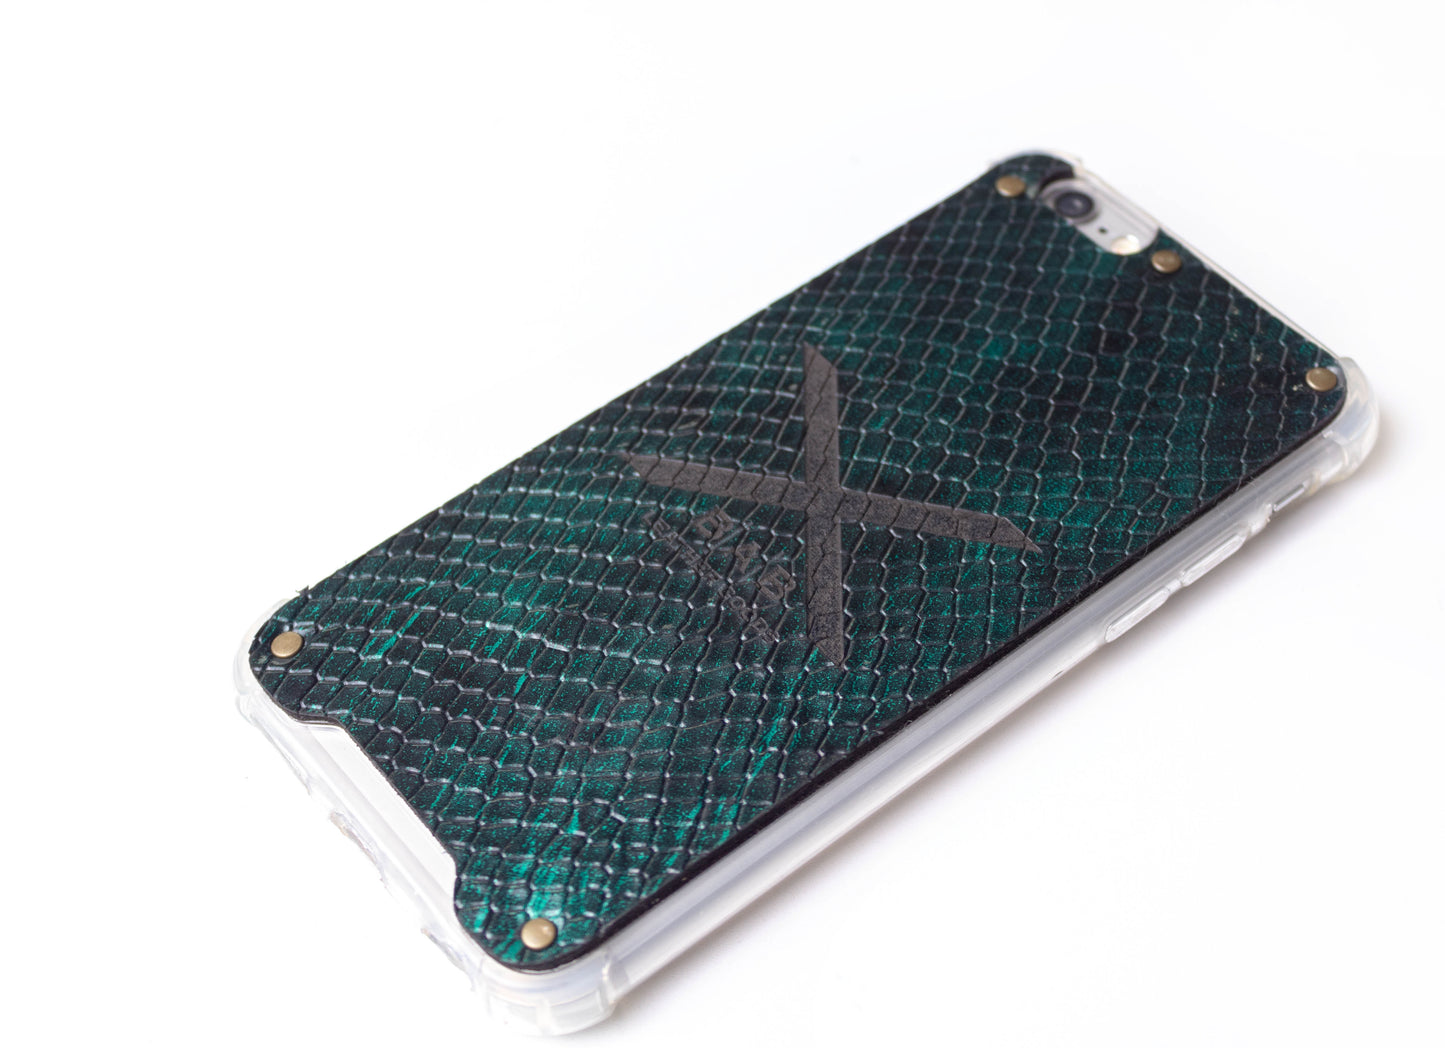 Coque pour iPhone en Cuir Véritable Verni Python Vert Texturé, découpée et gravée au laser, 5 Rivets en Bronze.- F36